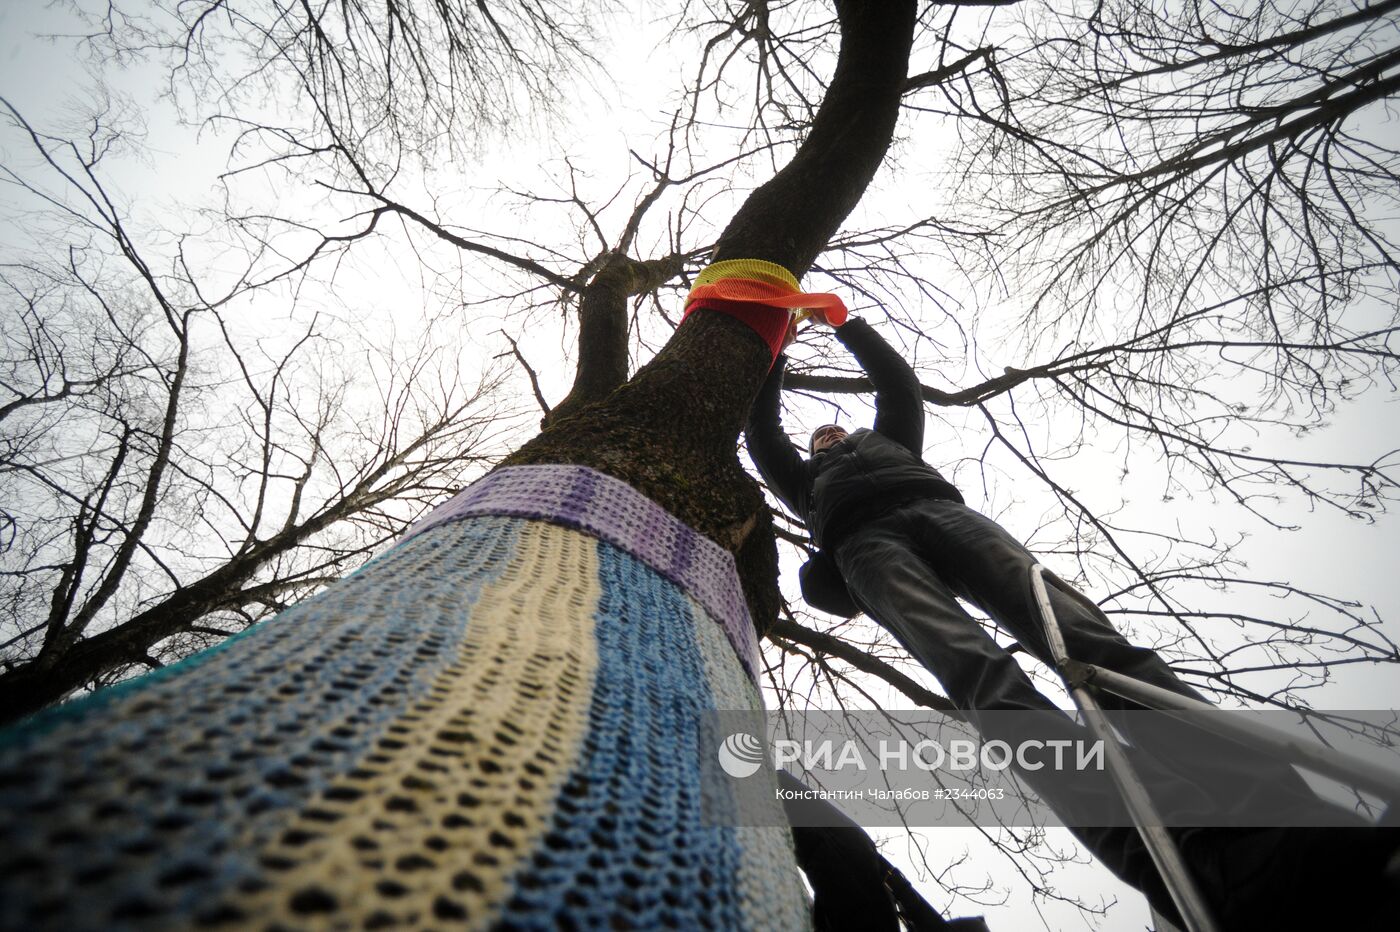 Акция "Одежду деревьям!" в Великом Новгороде